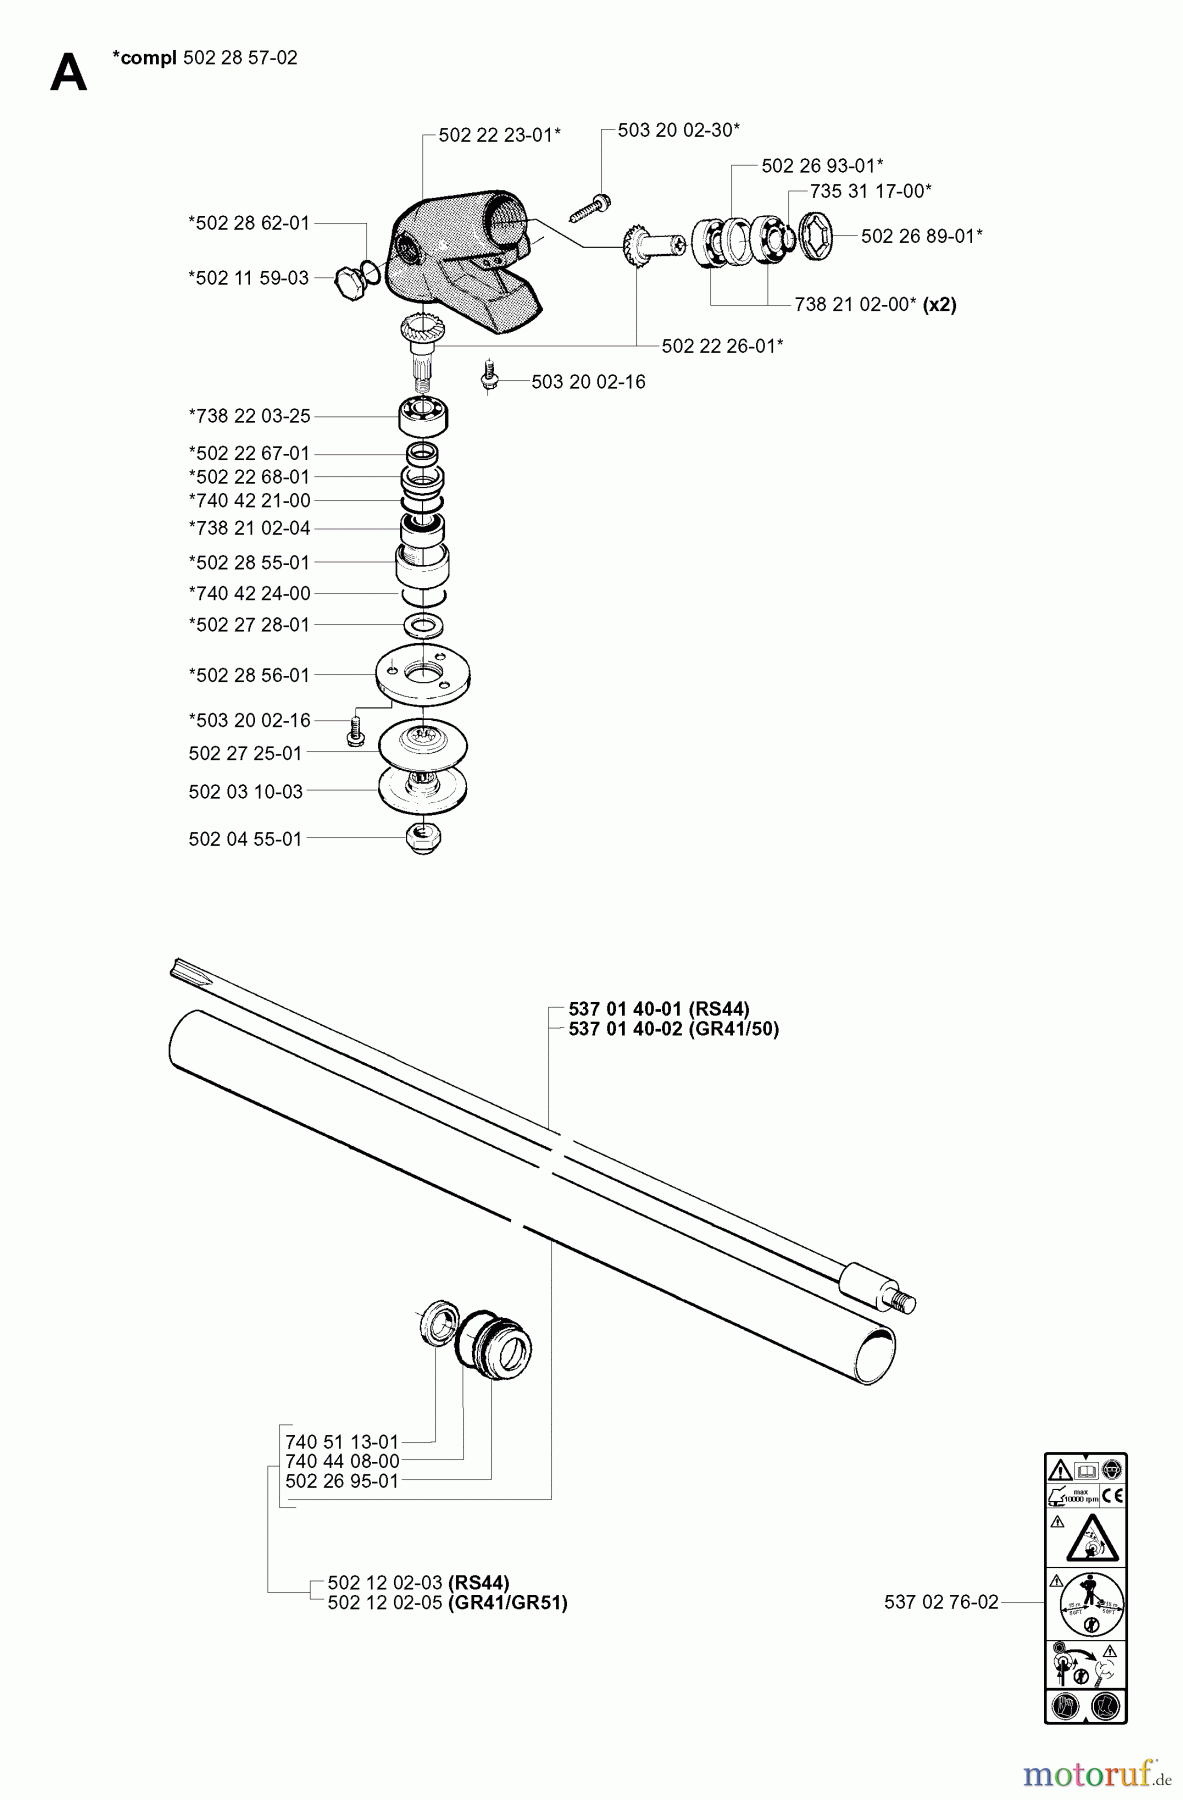  Jonsered Motorsensen, Trimmer GR50 - Jonsered String/Brush Trimmer (2001-03) BEVEL GEAR SHAFT